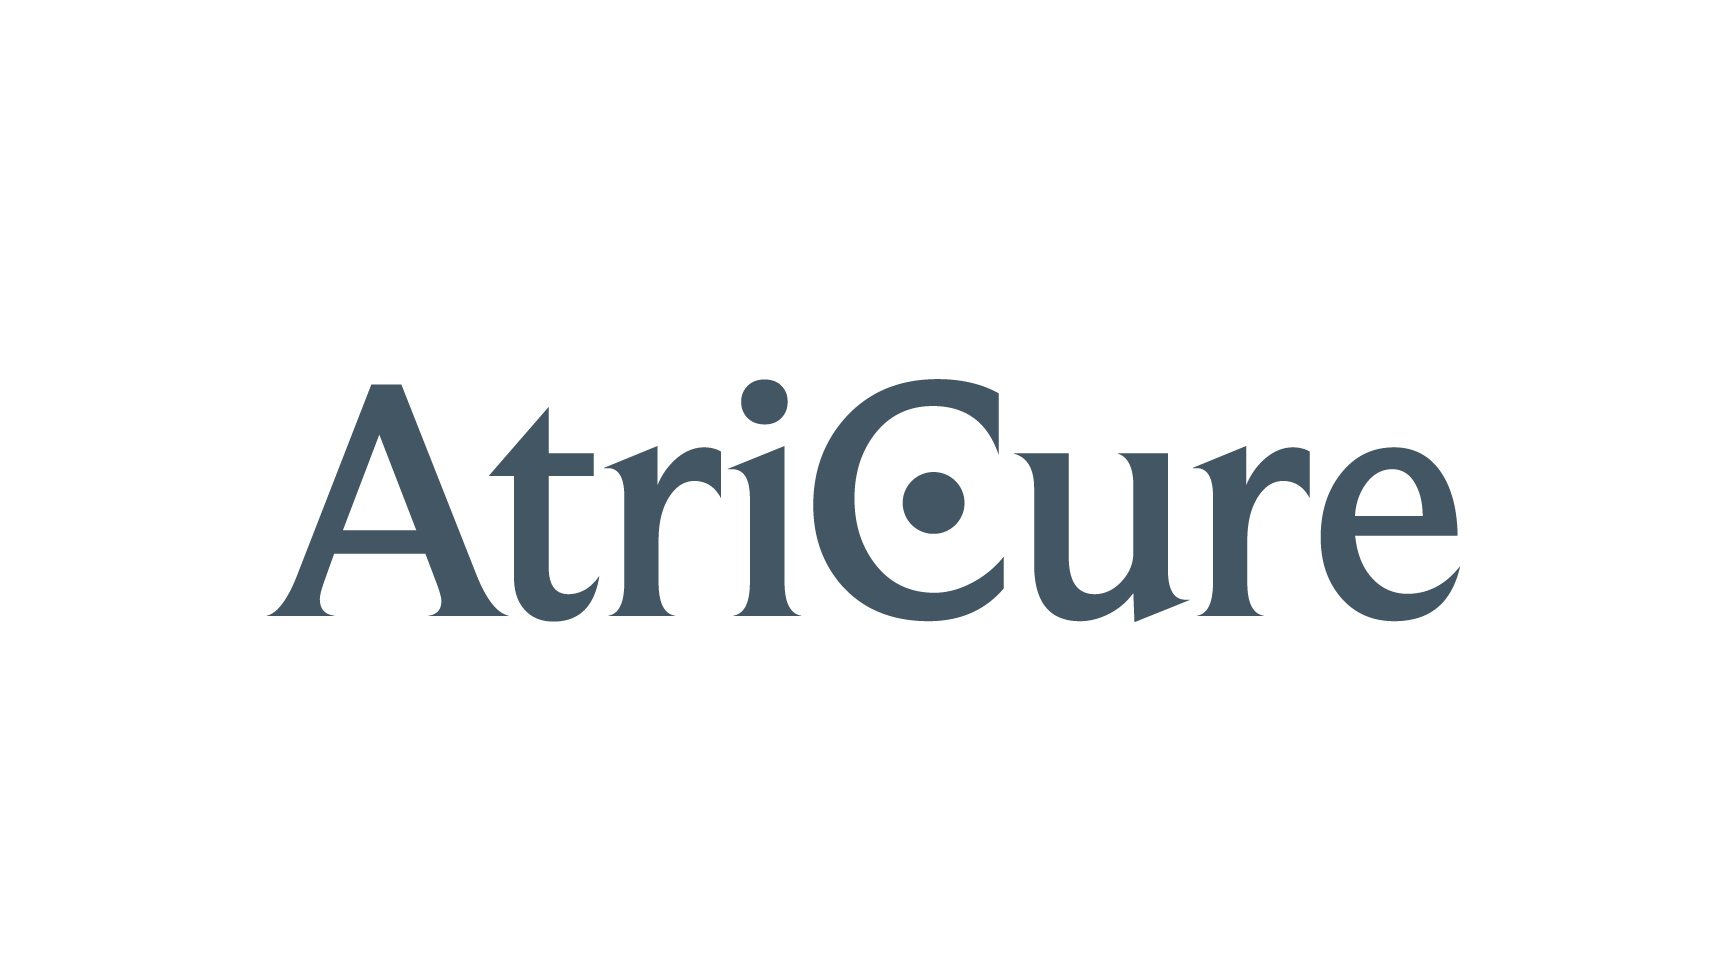 AtriCure Inc